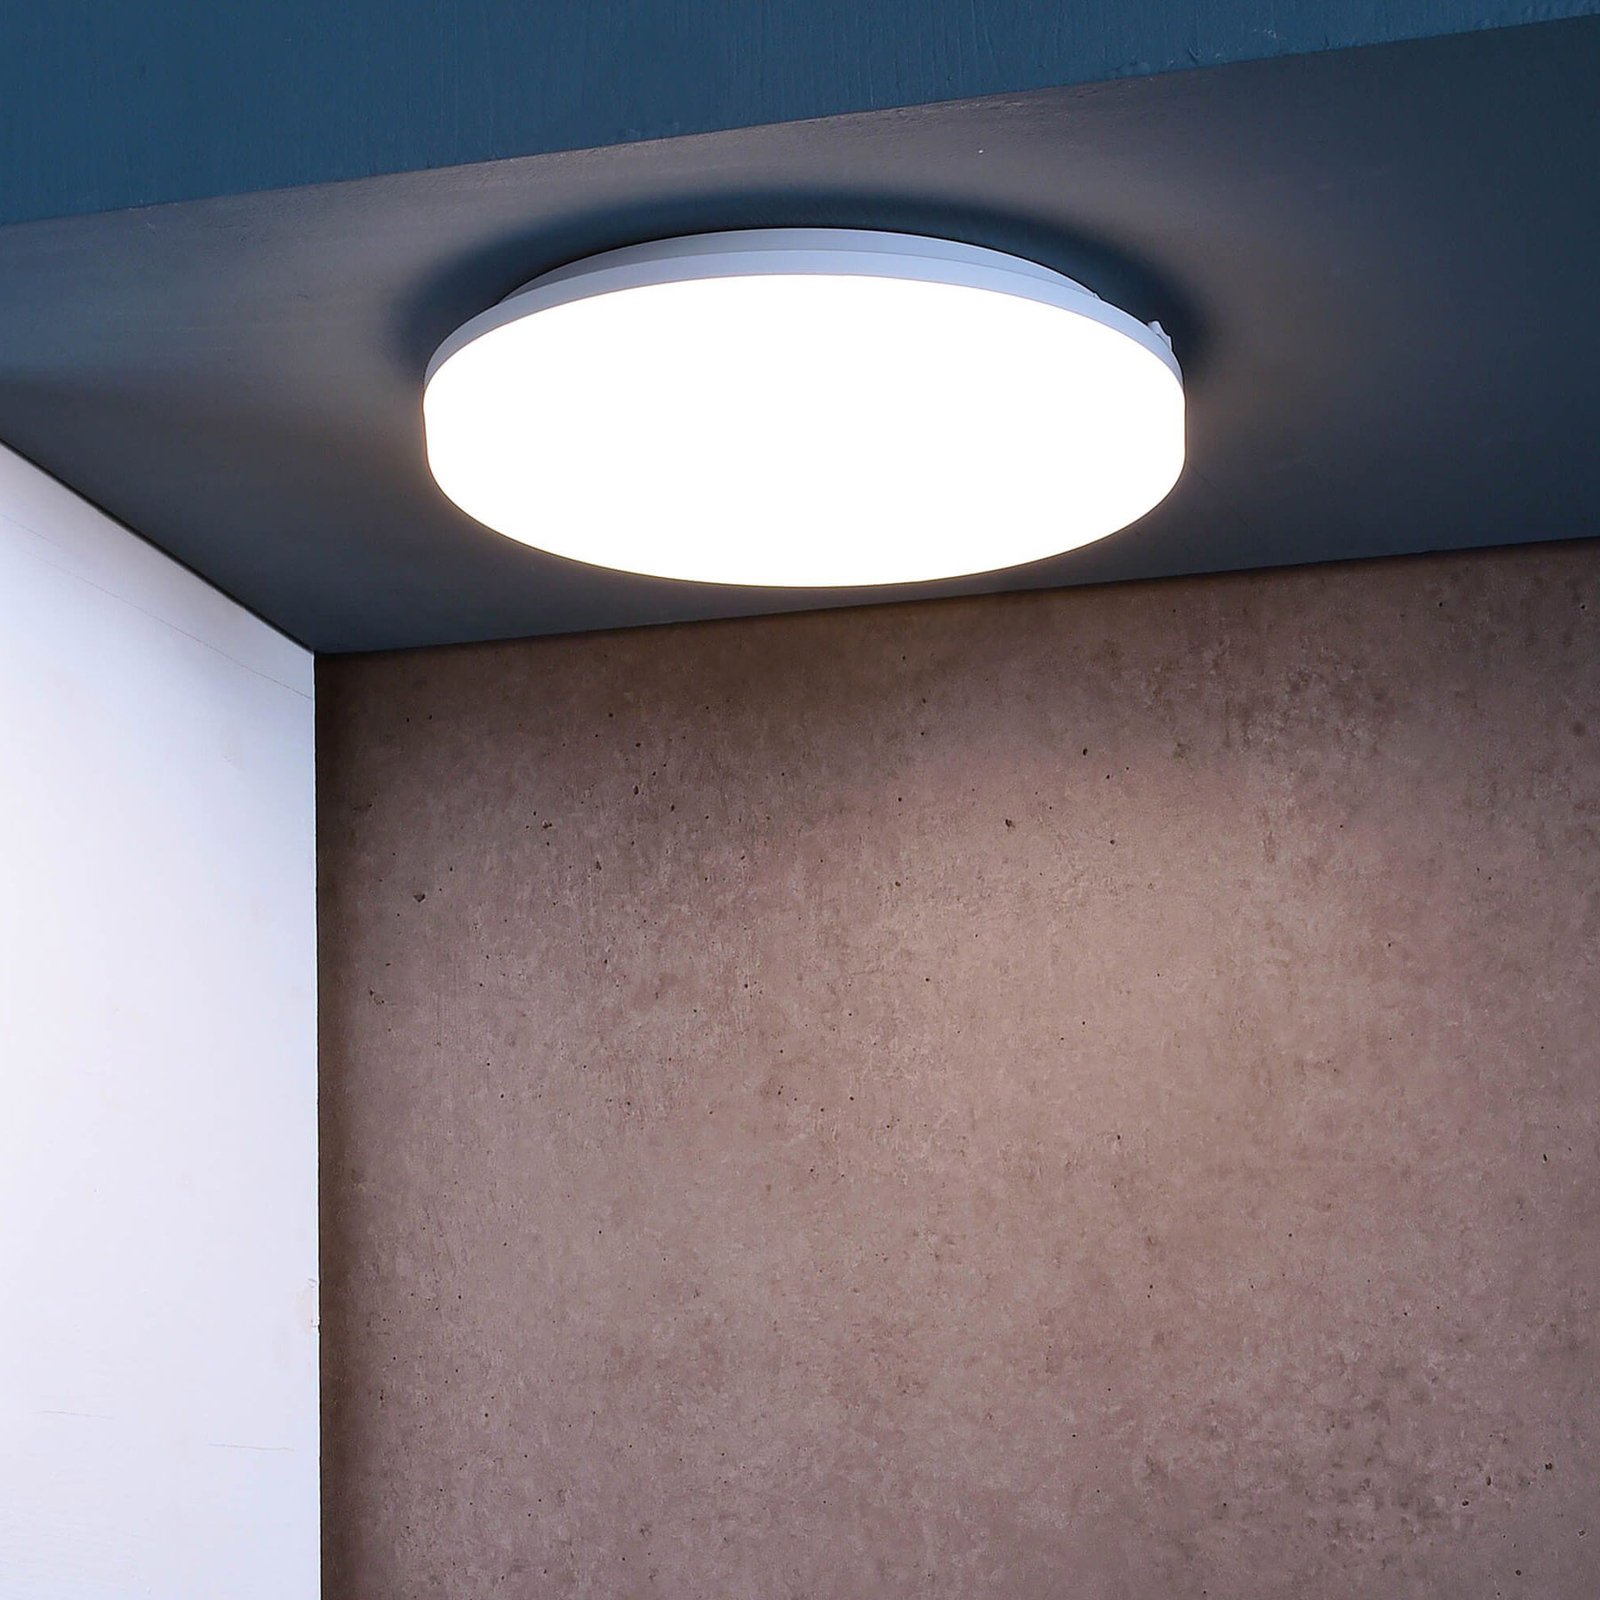 LED plafondlamp Altais, IP54, Ø 28 cm